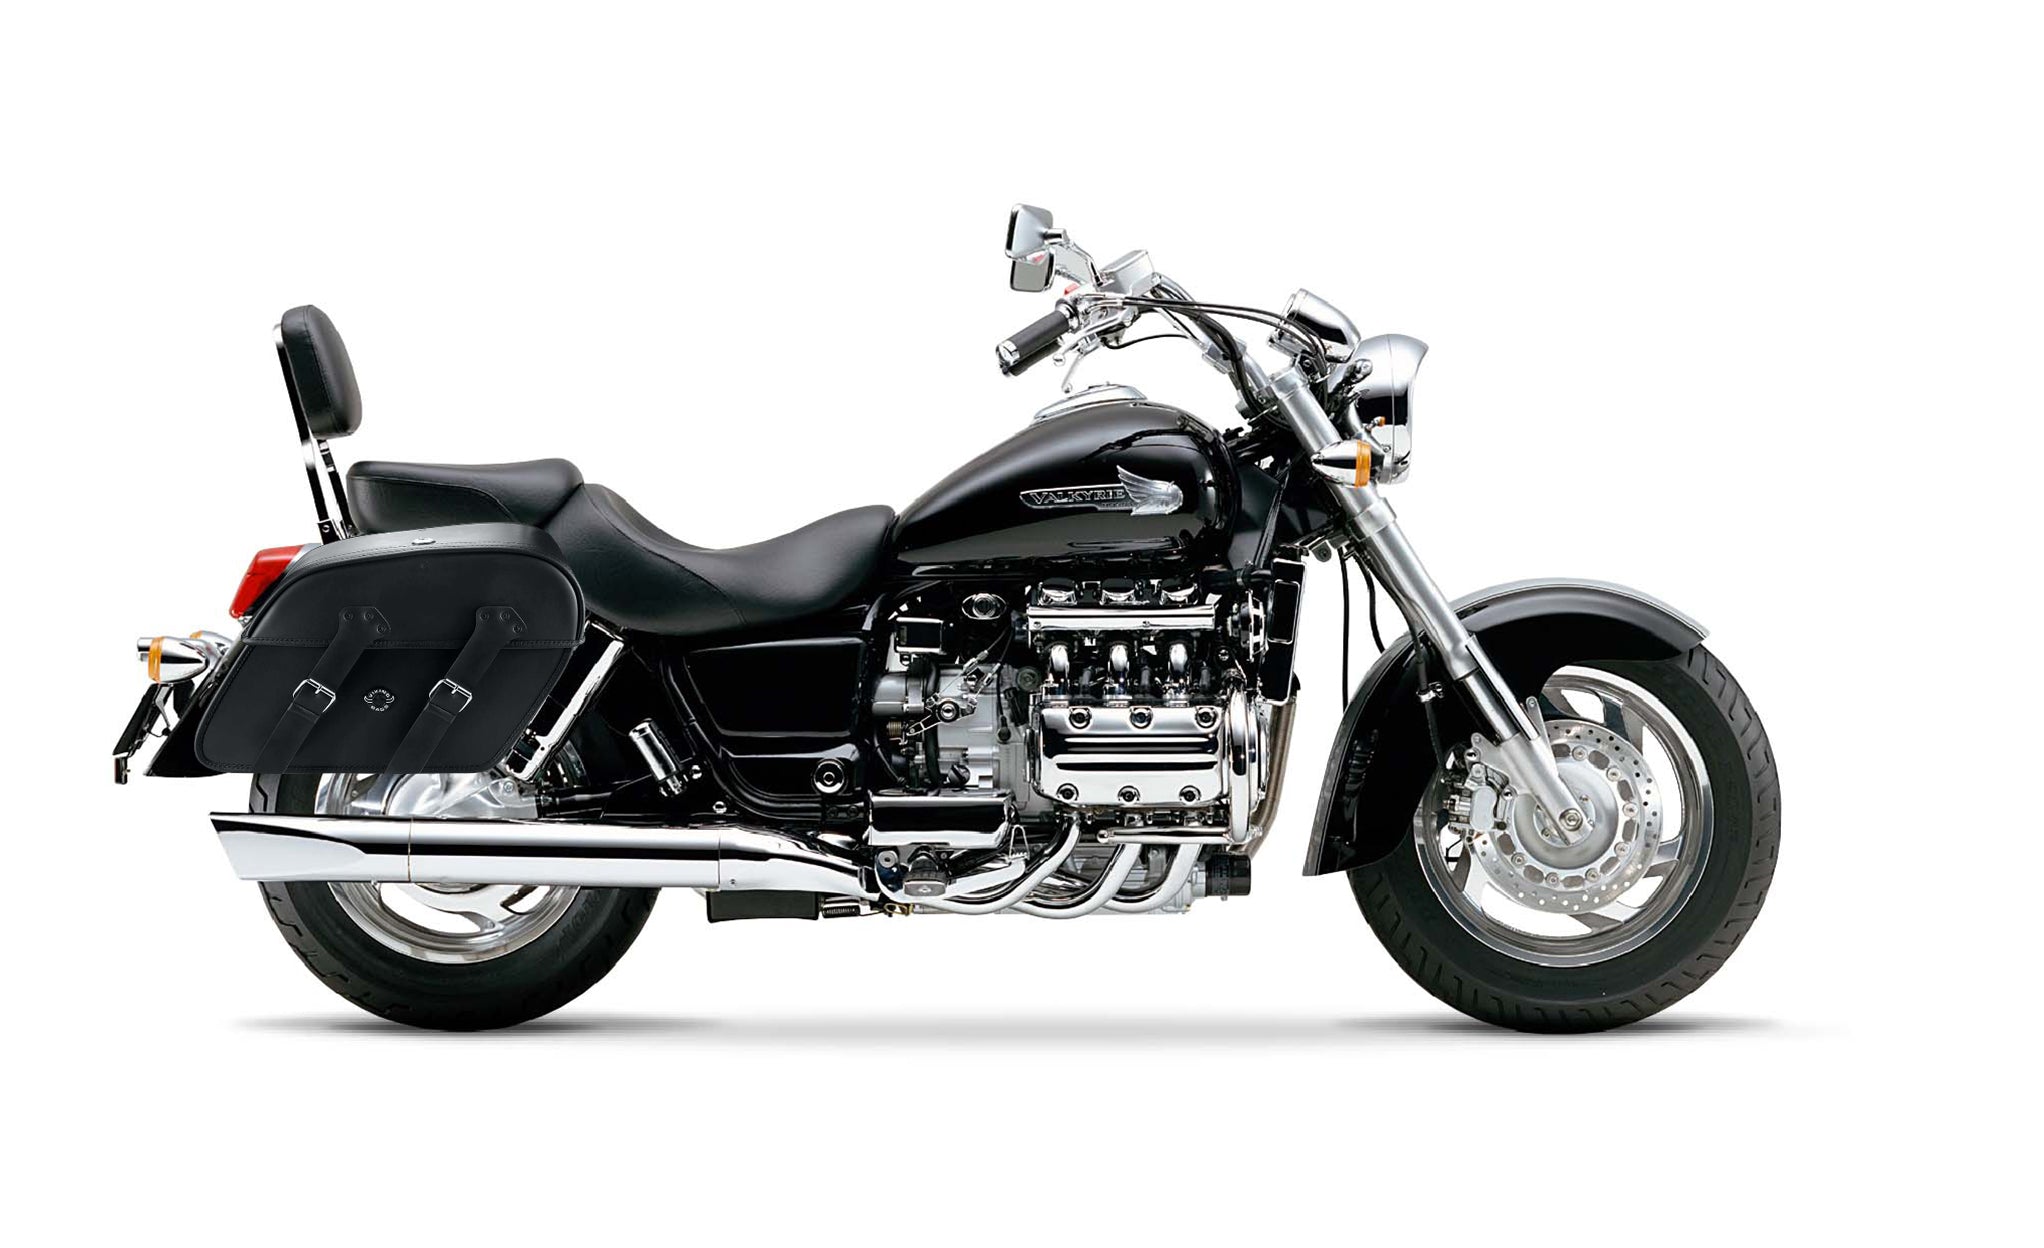 Viking Raven Extra Large Honda 1500 Valkyrie Standard Leather Motorcycle Saddlebags on Bike Photo @expand